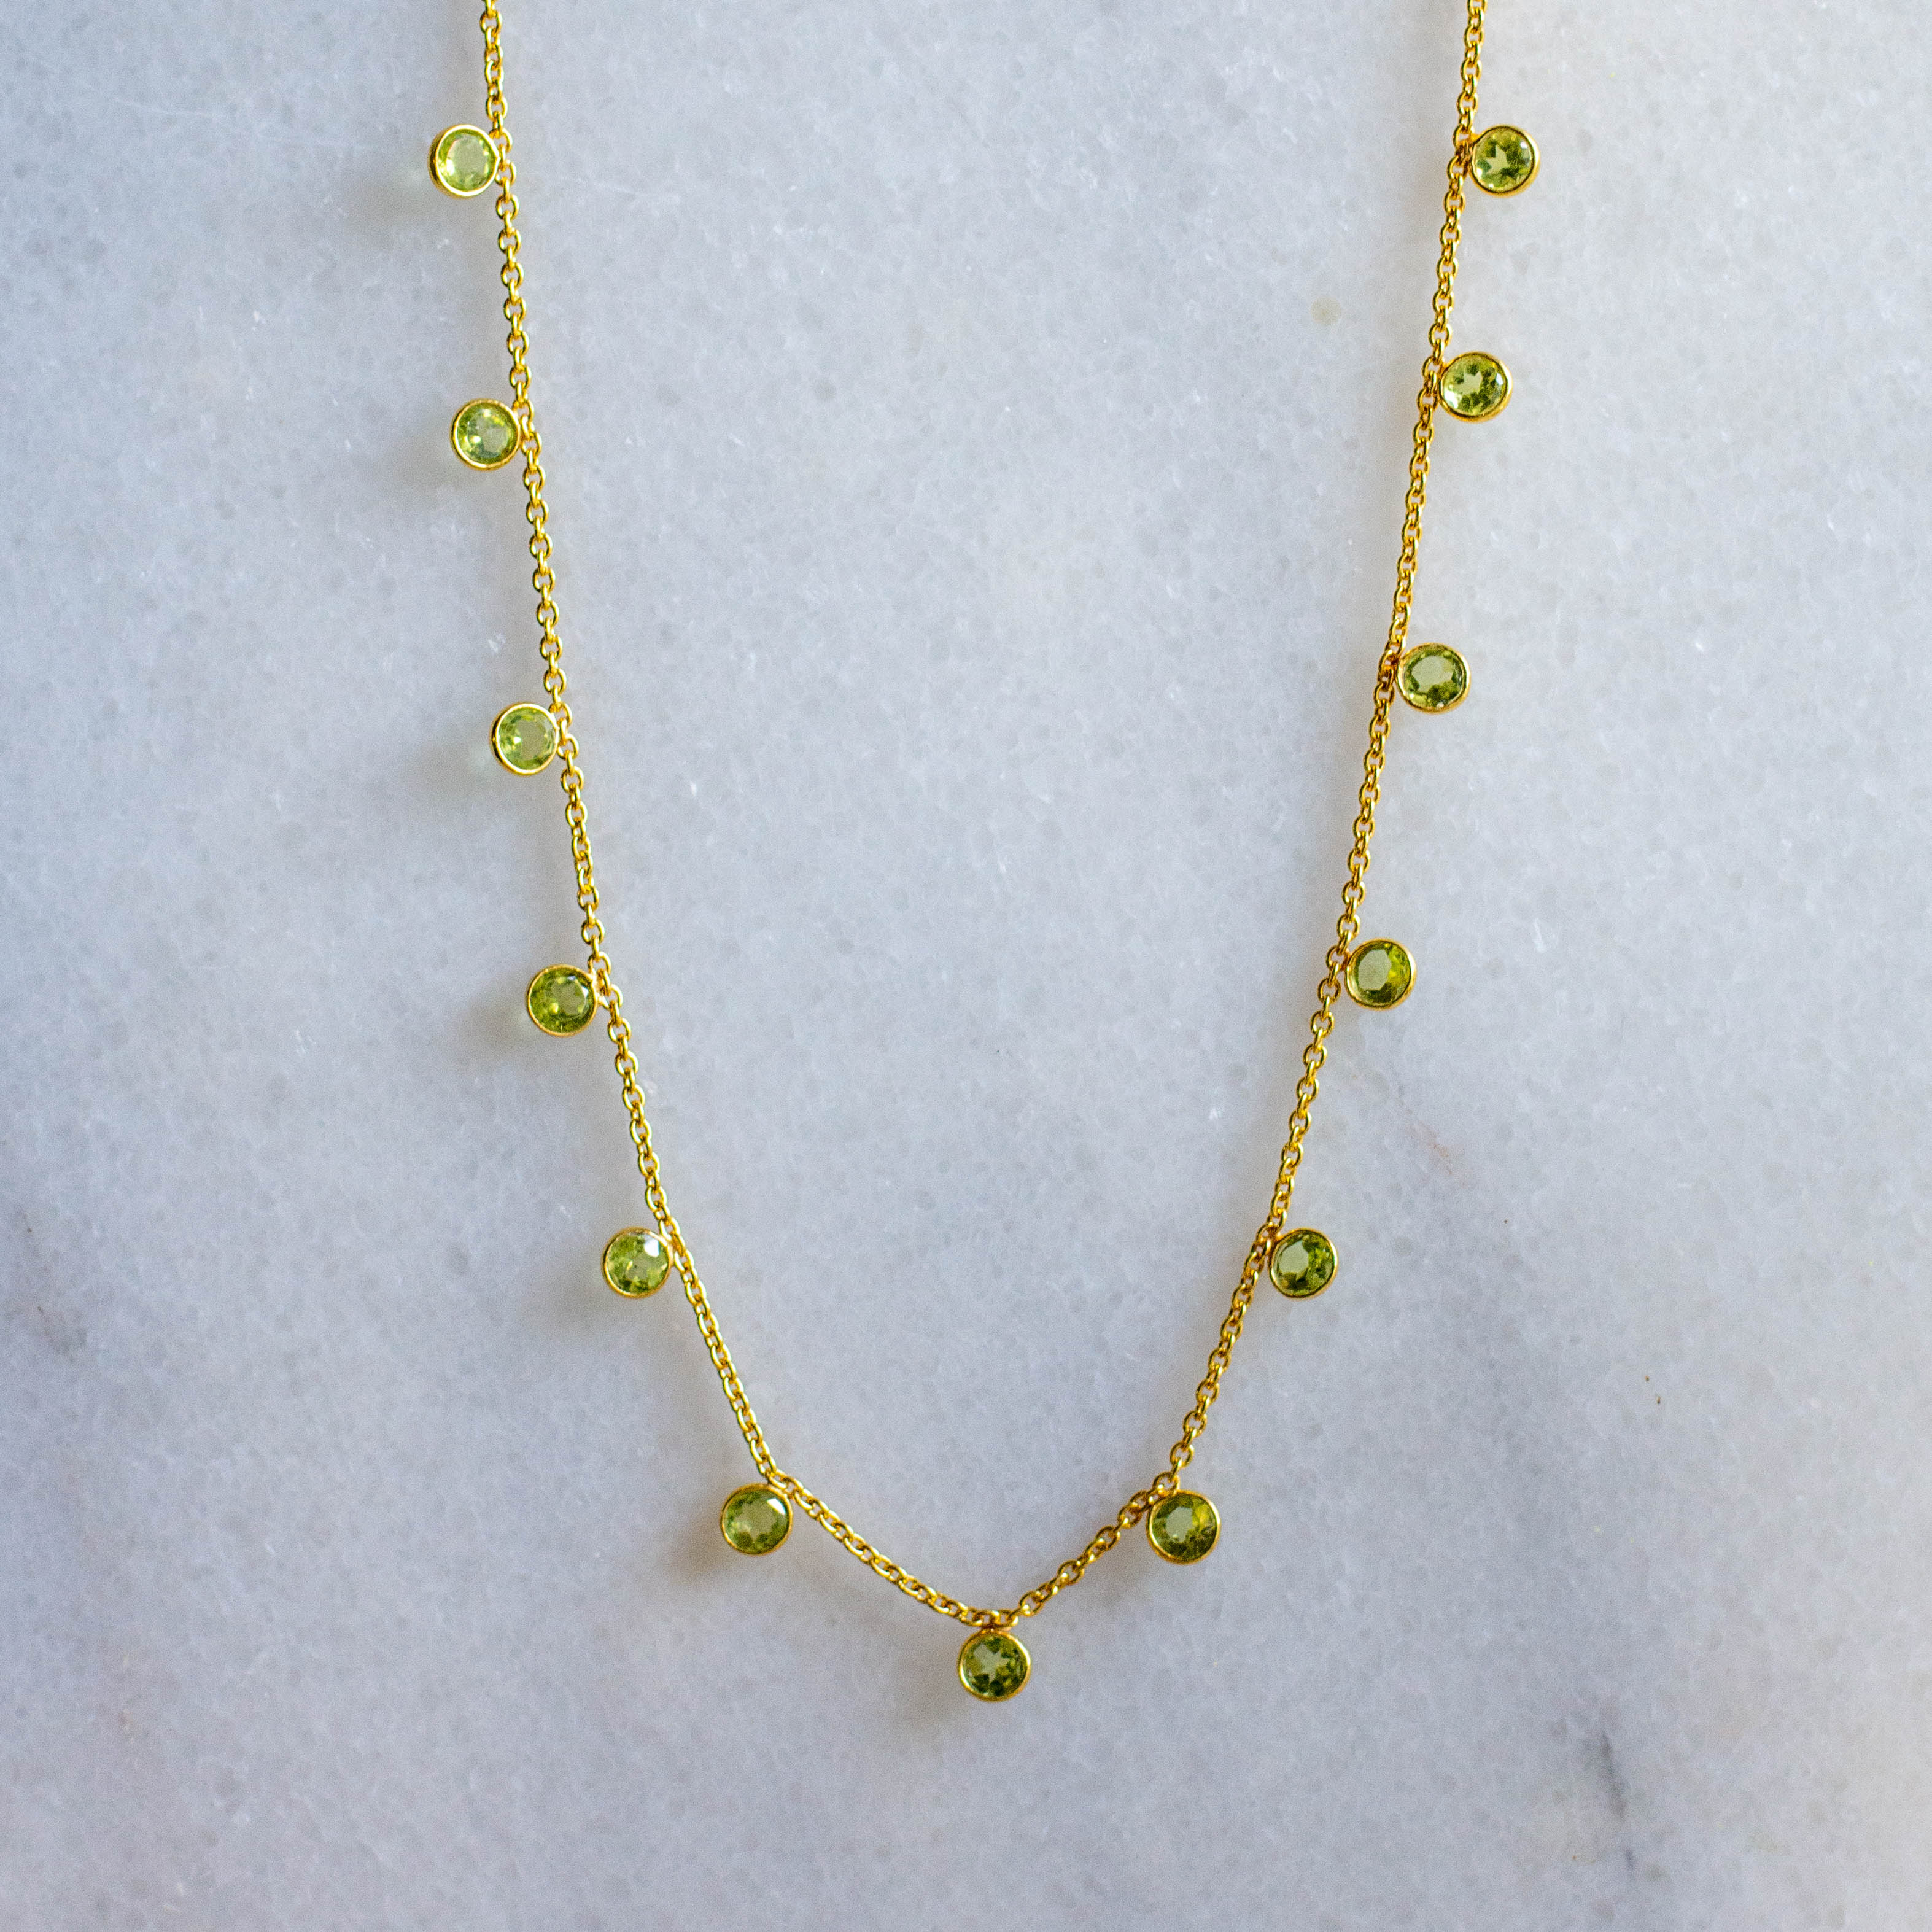 zaza gold necklace with peridot from memara